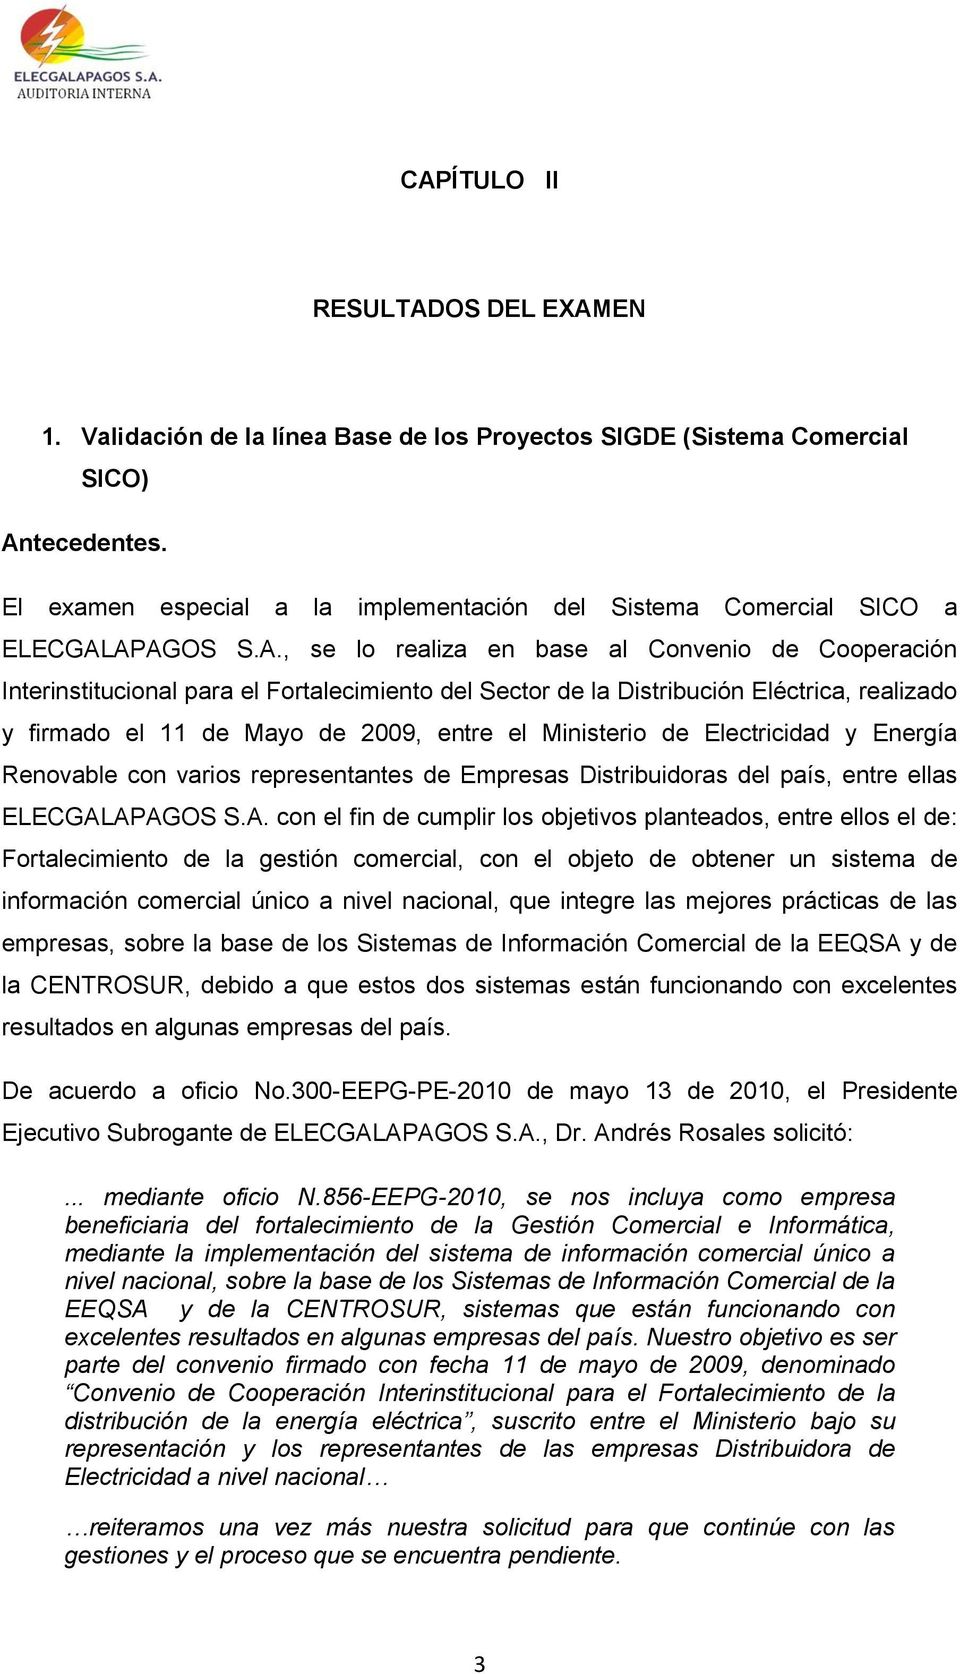 APAGOS S.A., se lo realiza en base al Convenio de Cooperación Interinstitucional para el Fortalecimiento del Sector de la Distribución Eléctrica, realizado y firmado el 11 de Mayo de 2009, entre el